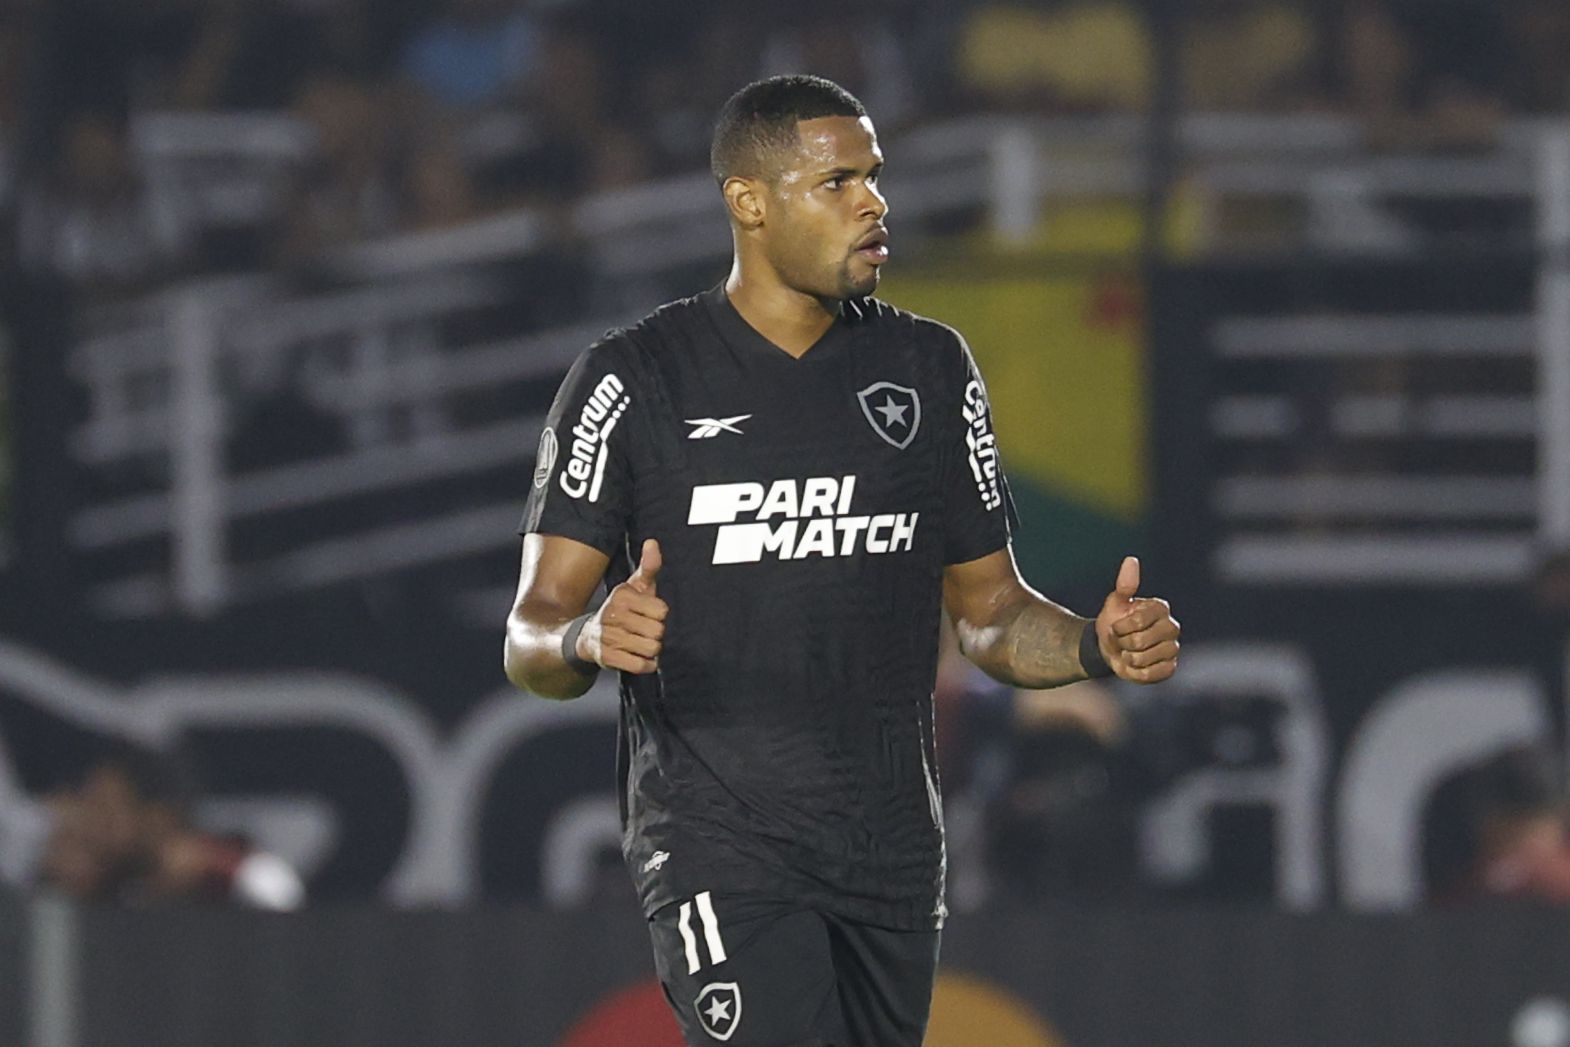 El jugador Júnior Santos de Botafogo es el más importante del equipo - crédito EFE